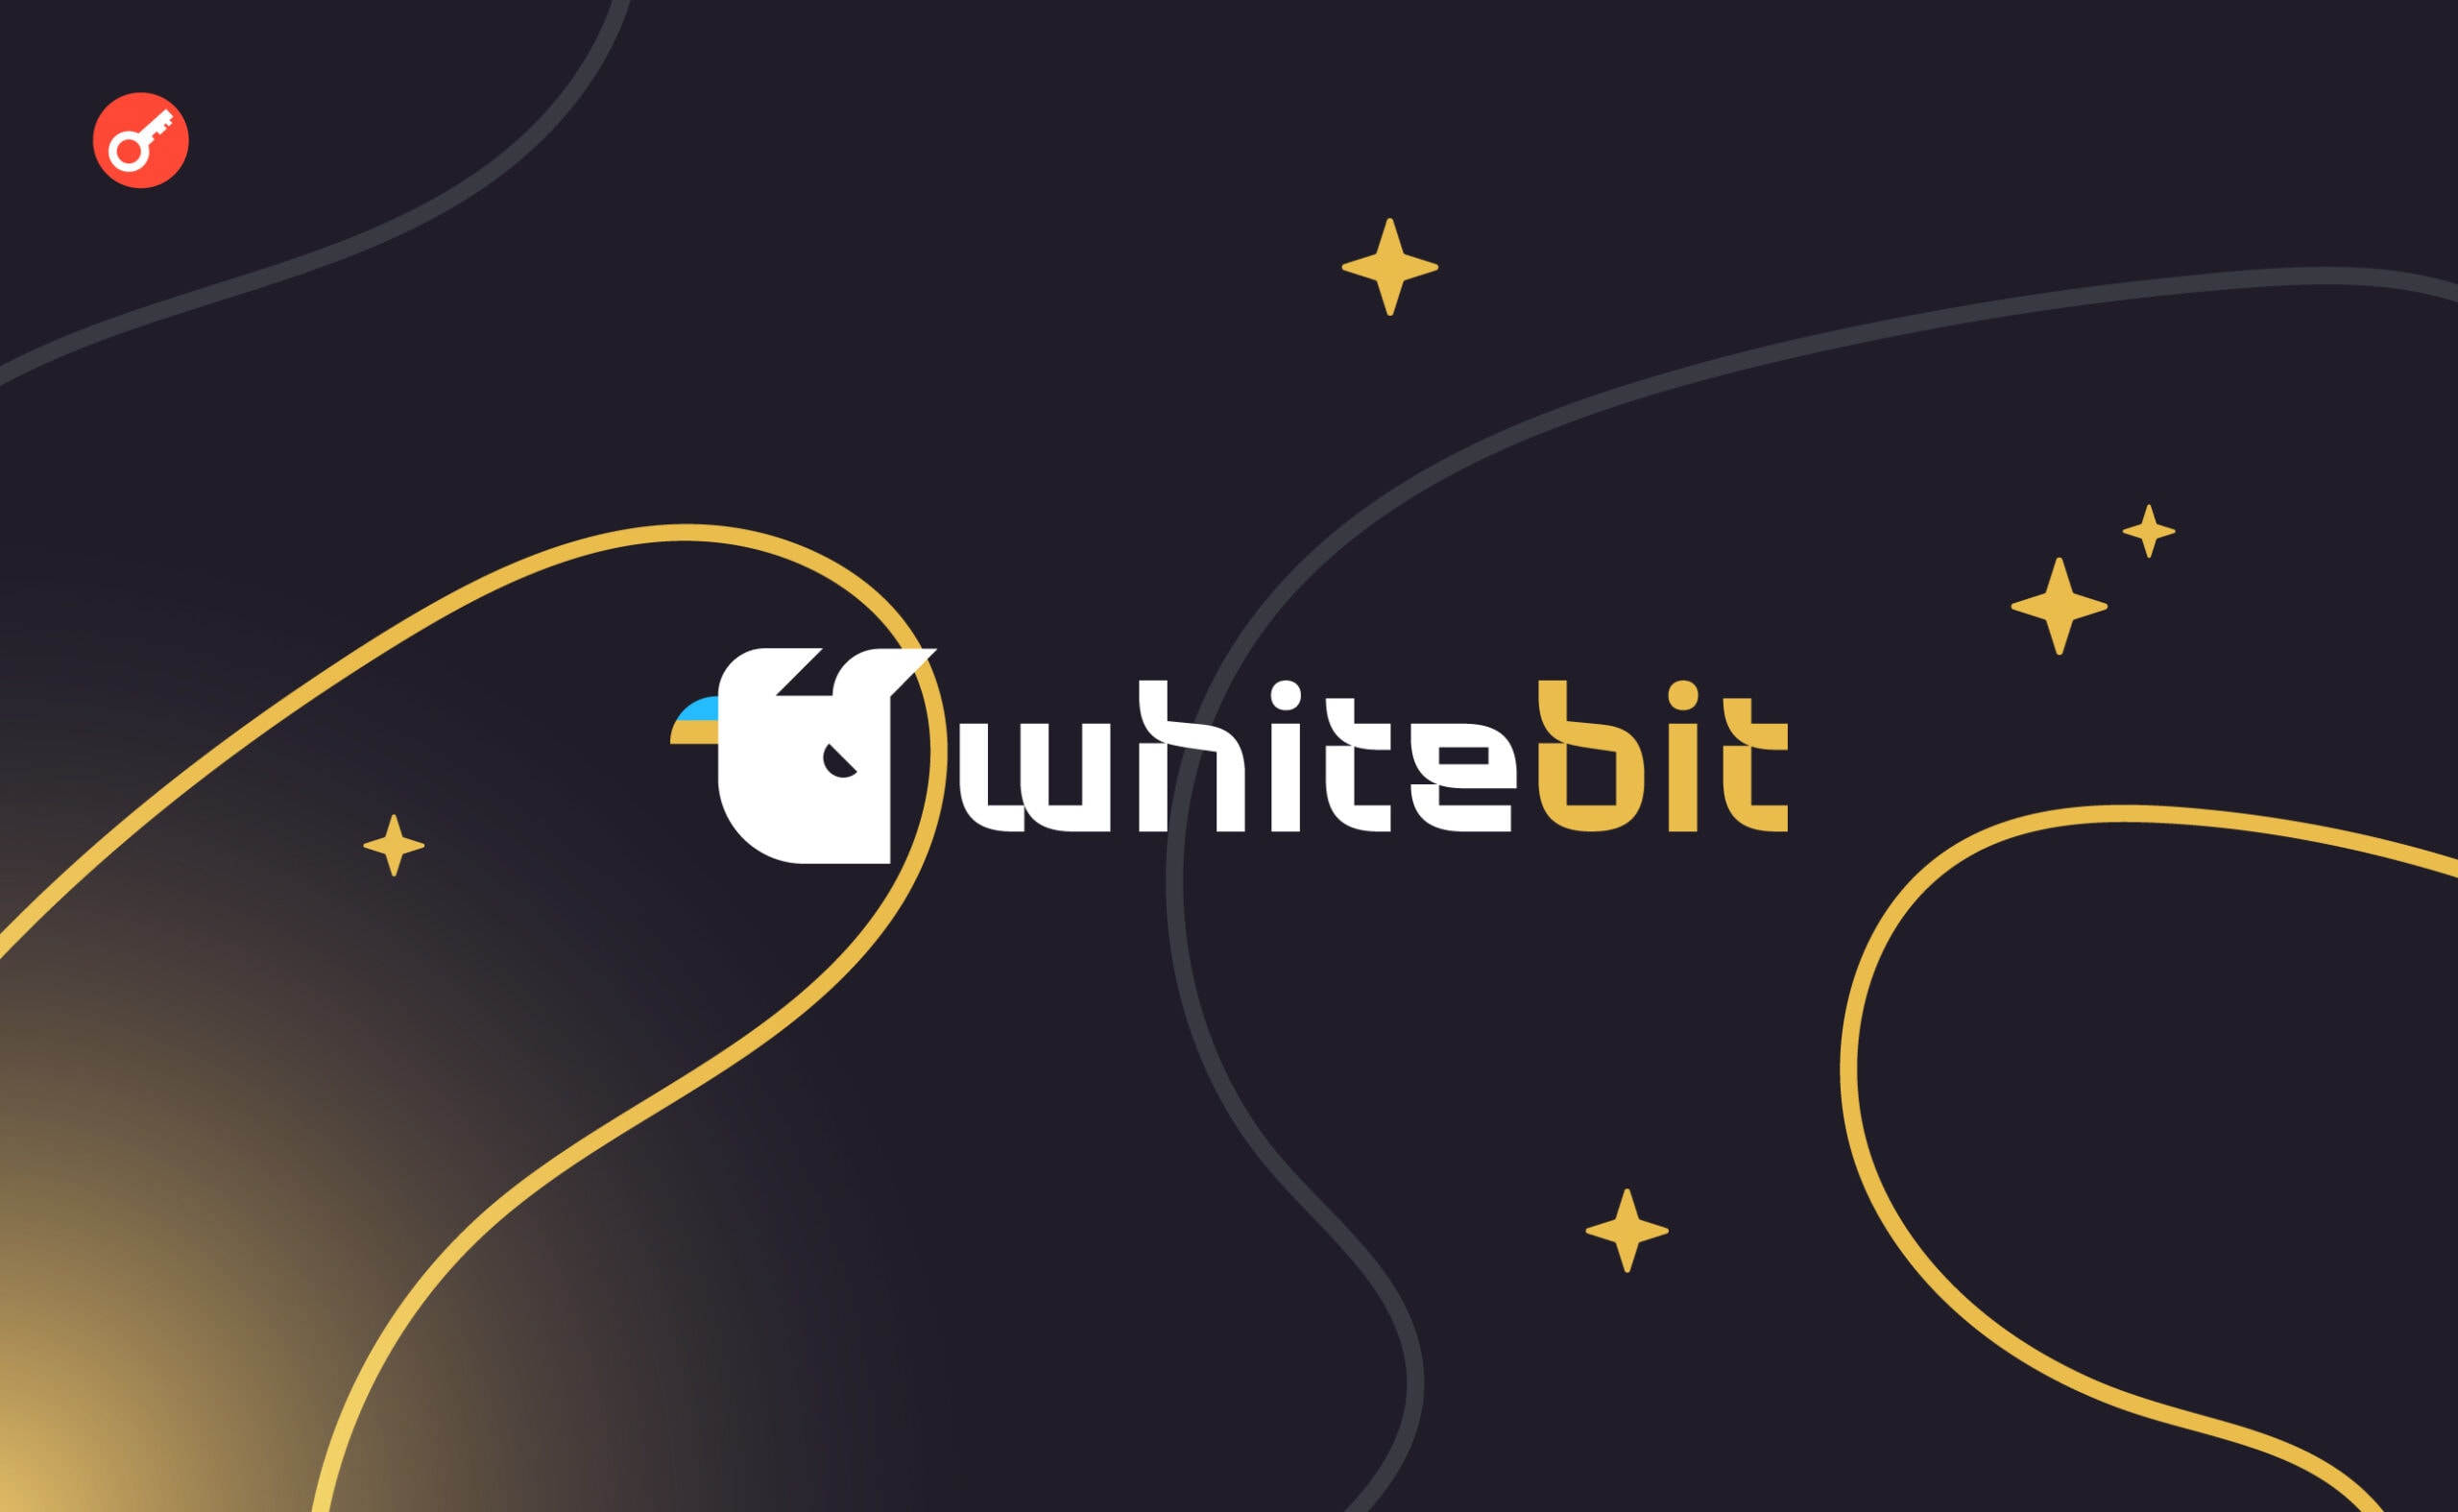 WhiteBIT приняла участие в криптоконференции TOKEN2049. Заглавный коллаж новости.